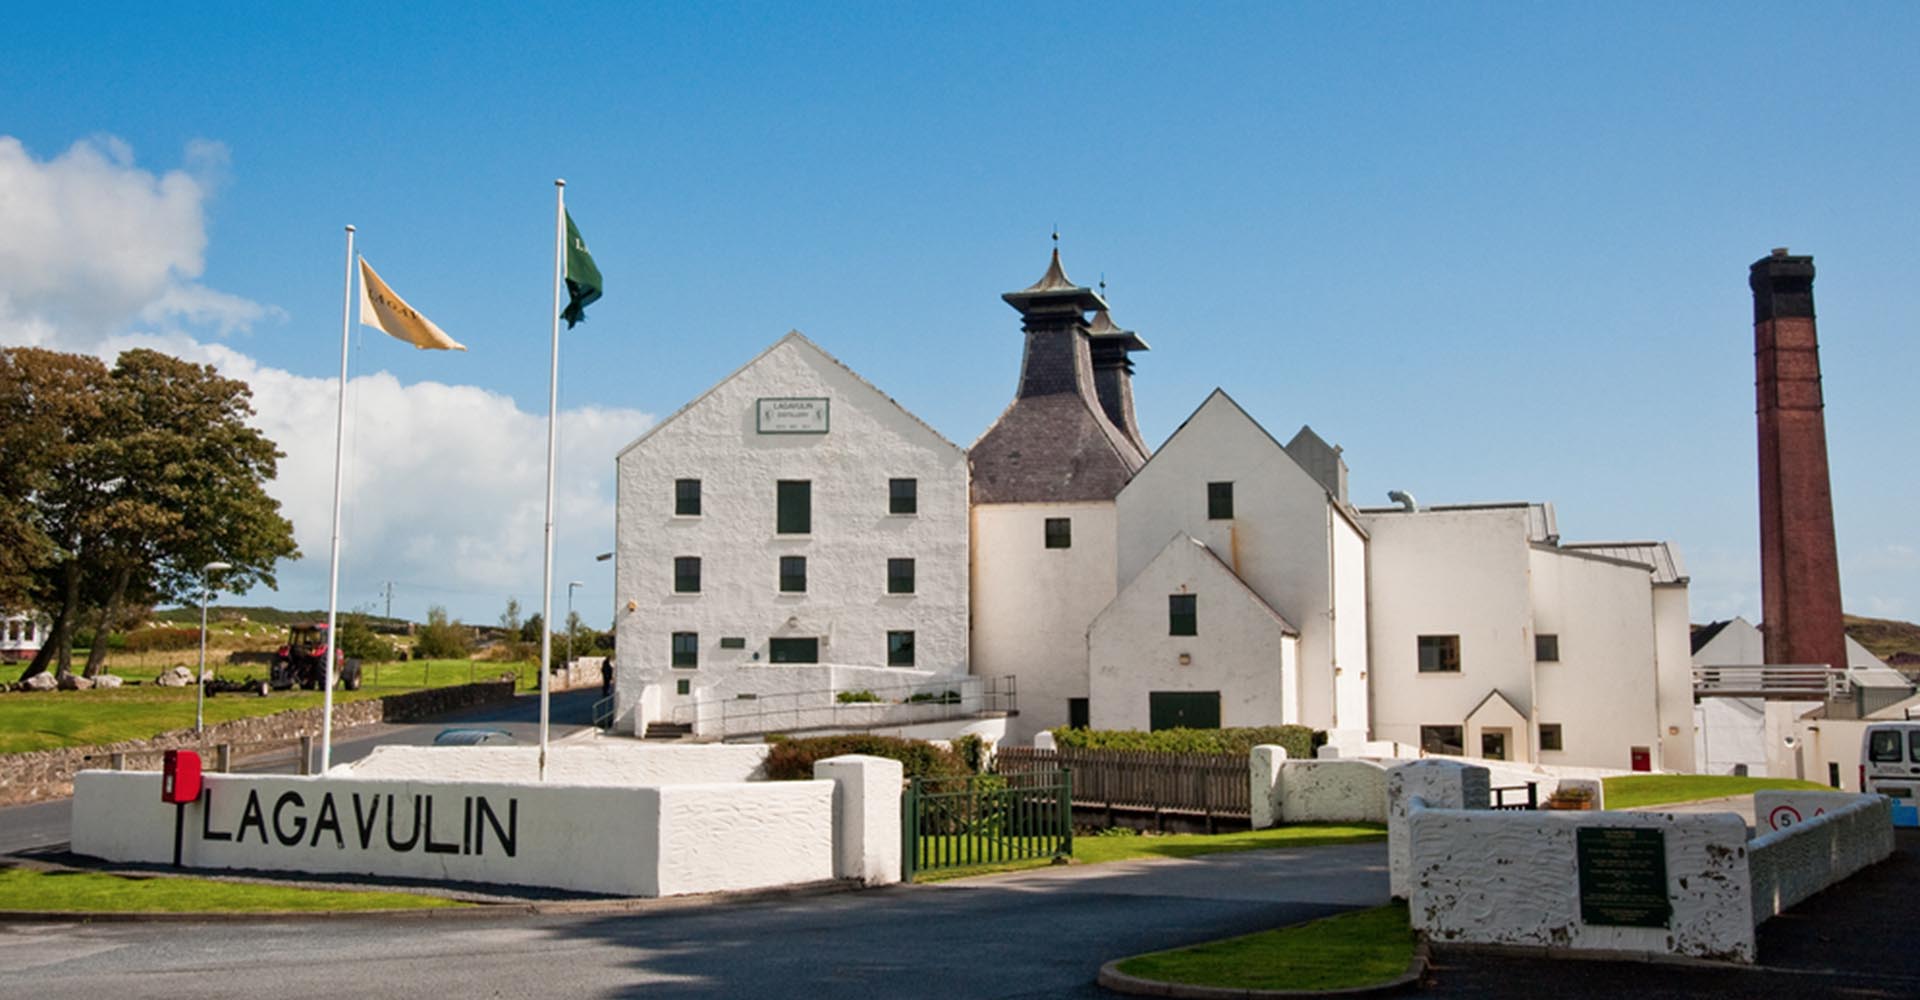 Lagavulin whisky distillery on Islay